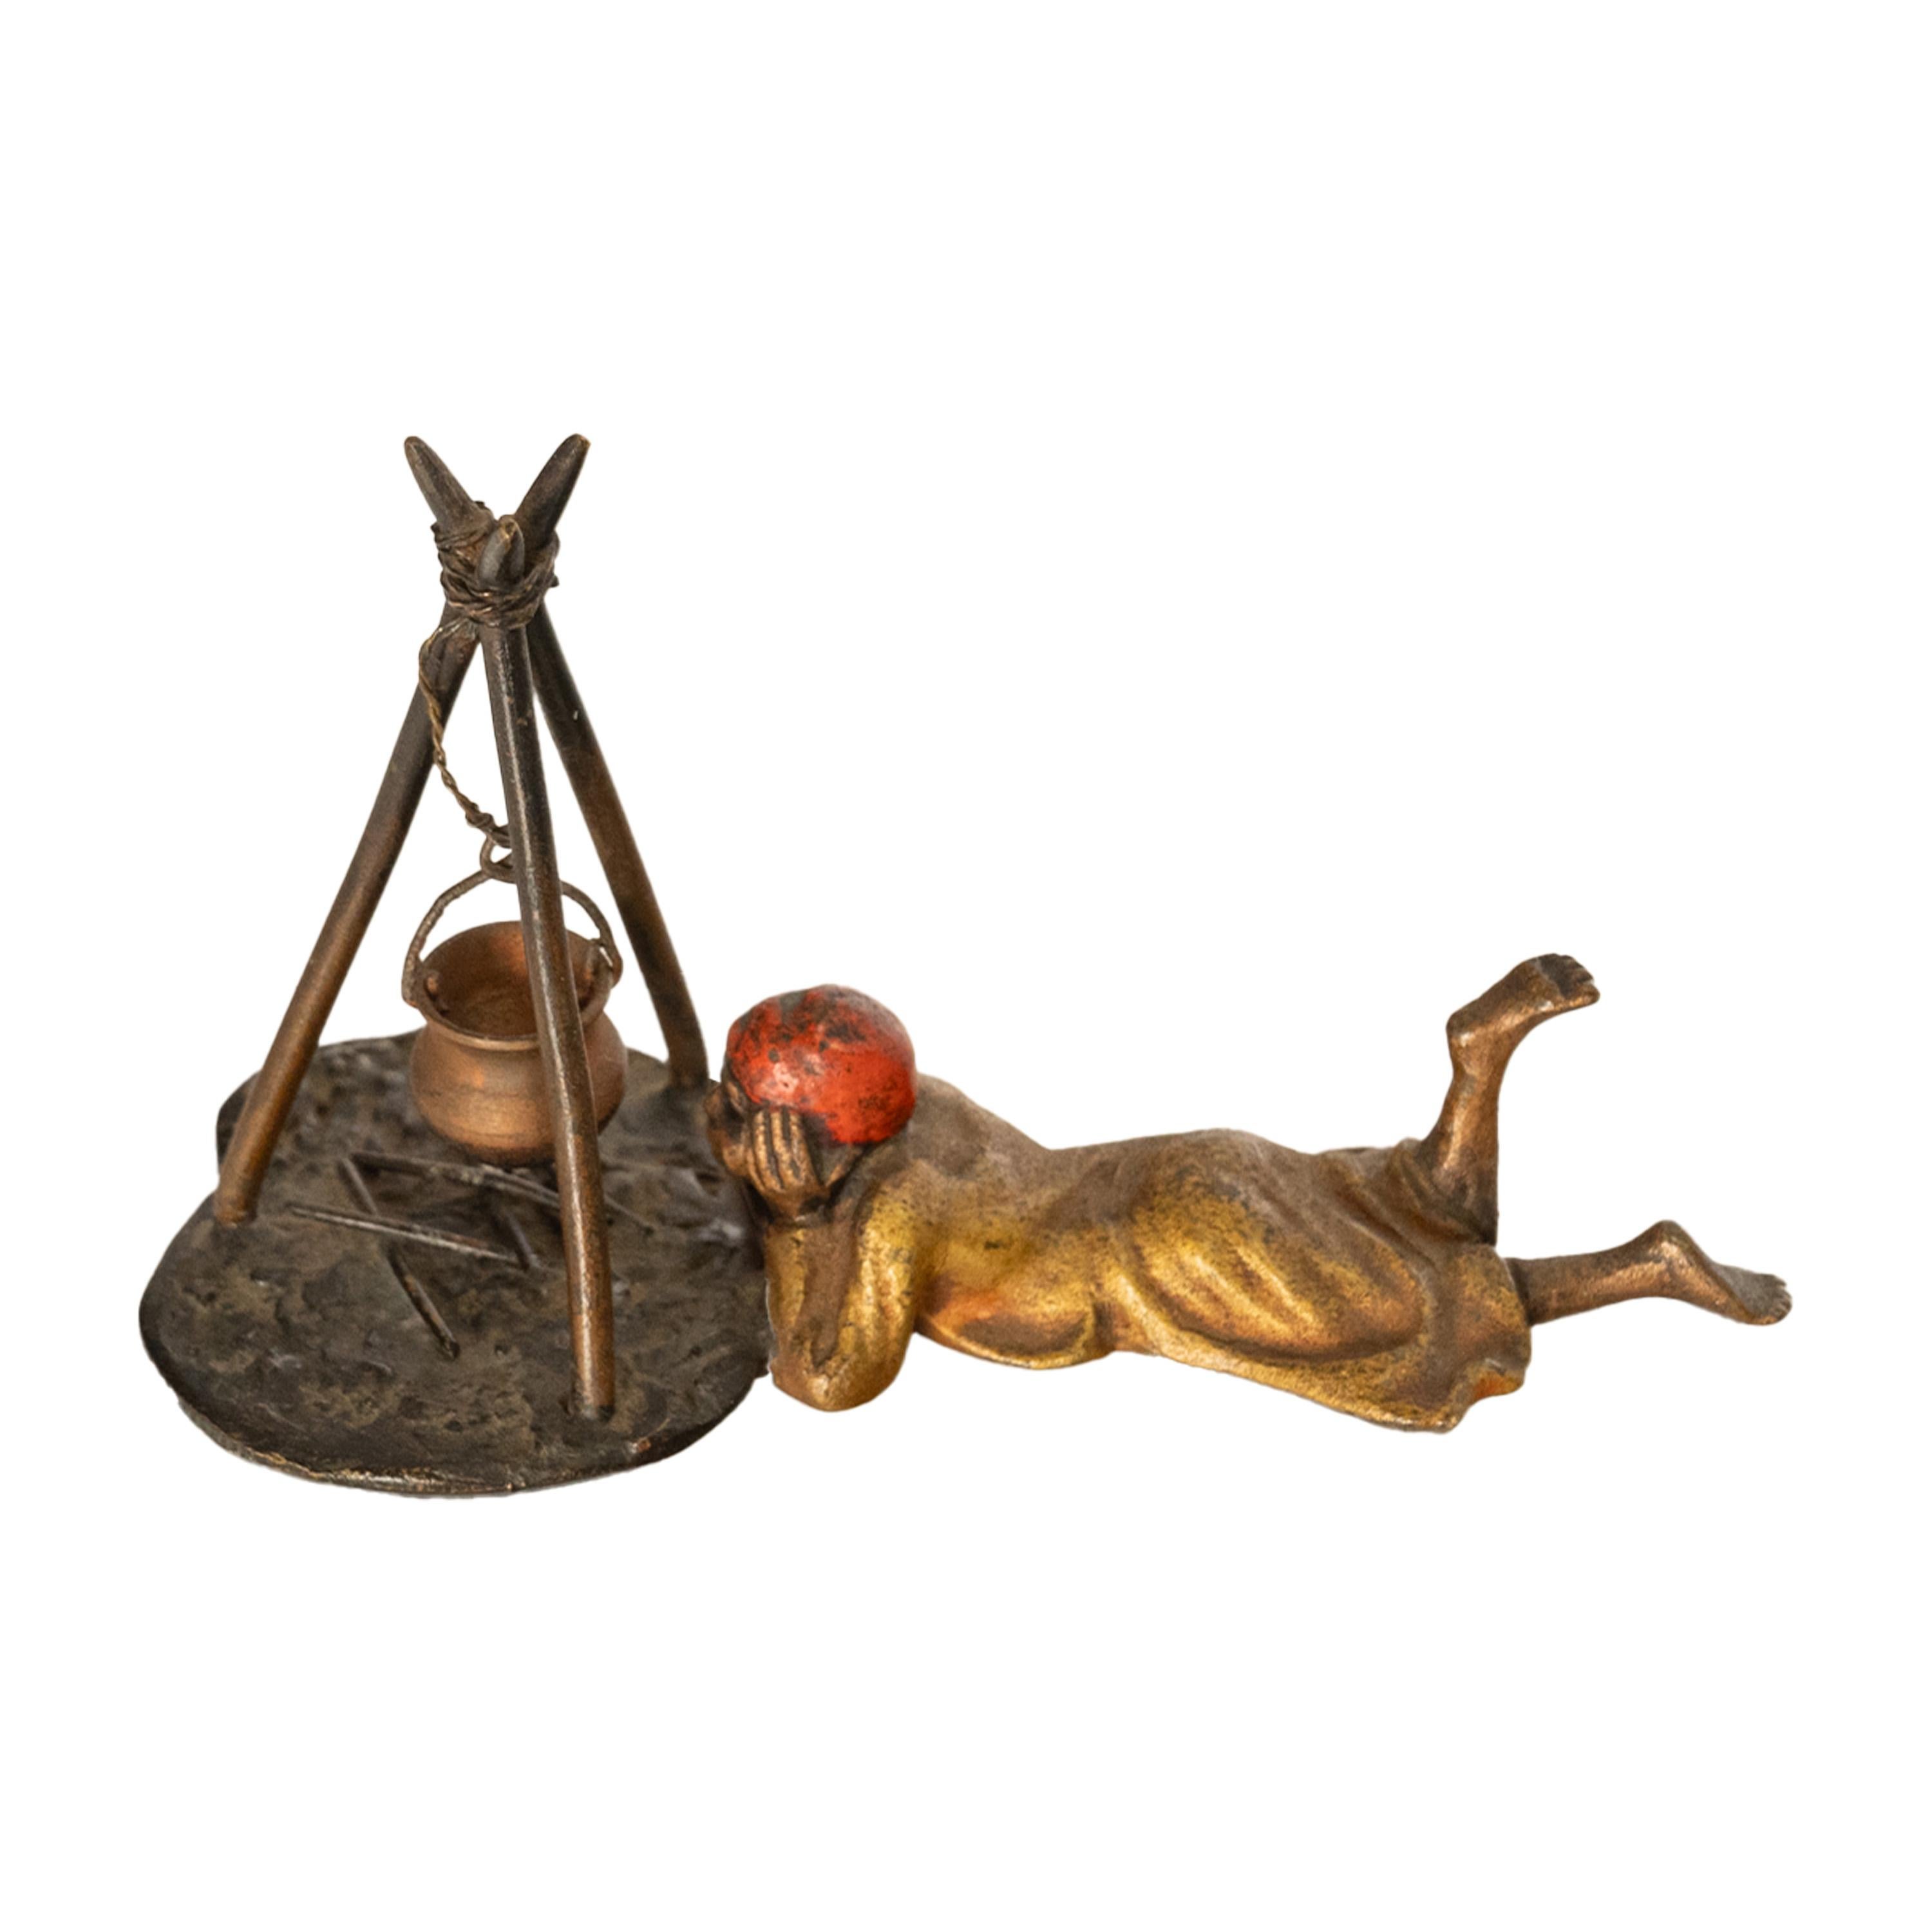 Eine charmante und skurrile antike Bronze mit Kaltbemalung im orientalischen Stil, zugeschrieben Franz Bergmann, Österreich um 1910.
Die Bronze stellt einen arabischen Jungen dar, der auf dem Bauch liegt und auf sein Lagerfeuer blickt. Darüber